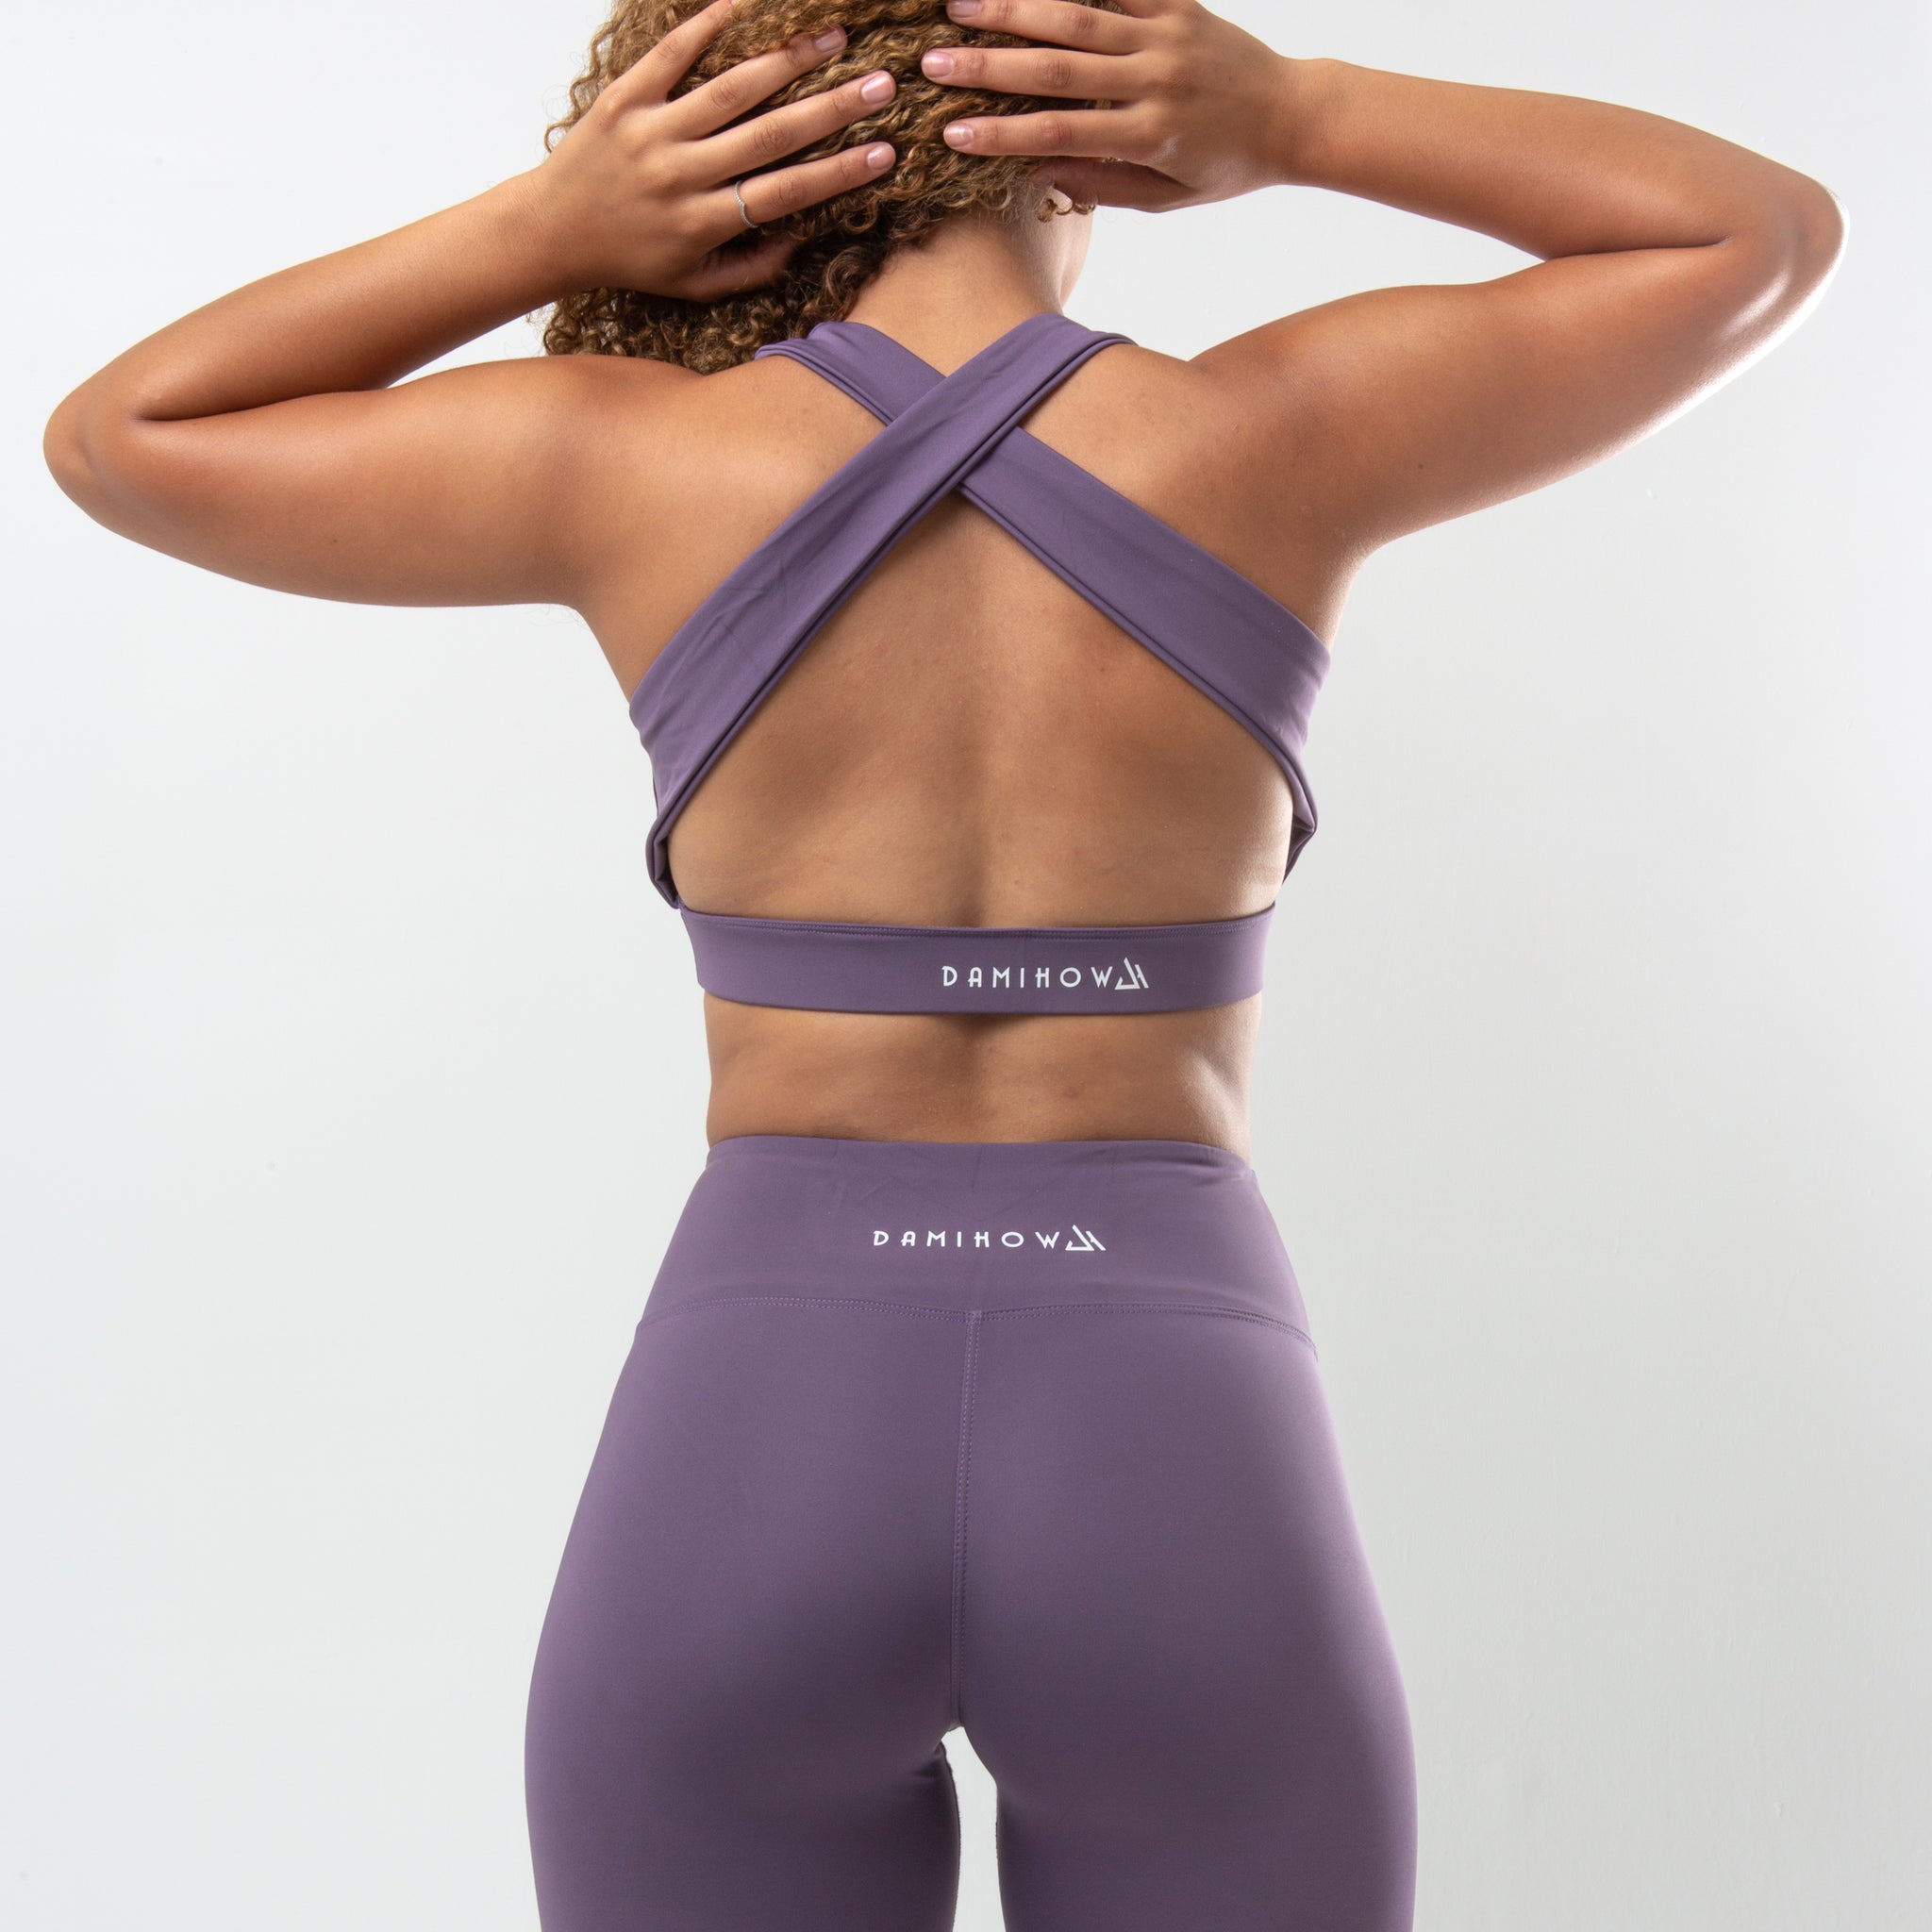 Bombshell Sportswear Bra Size M Lilac Purple soldout NWOT